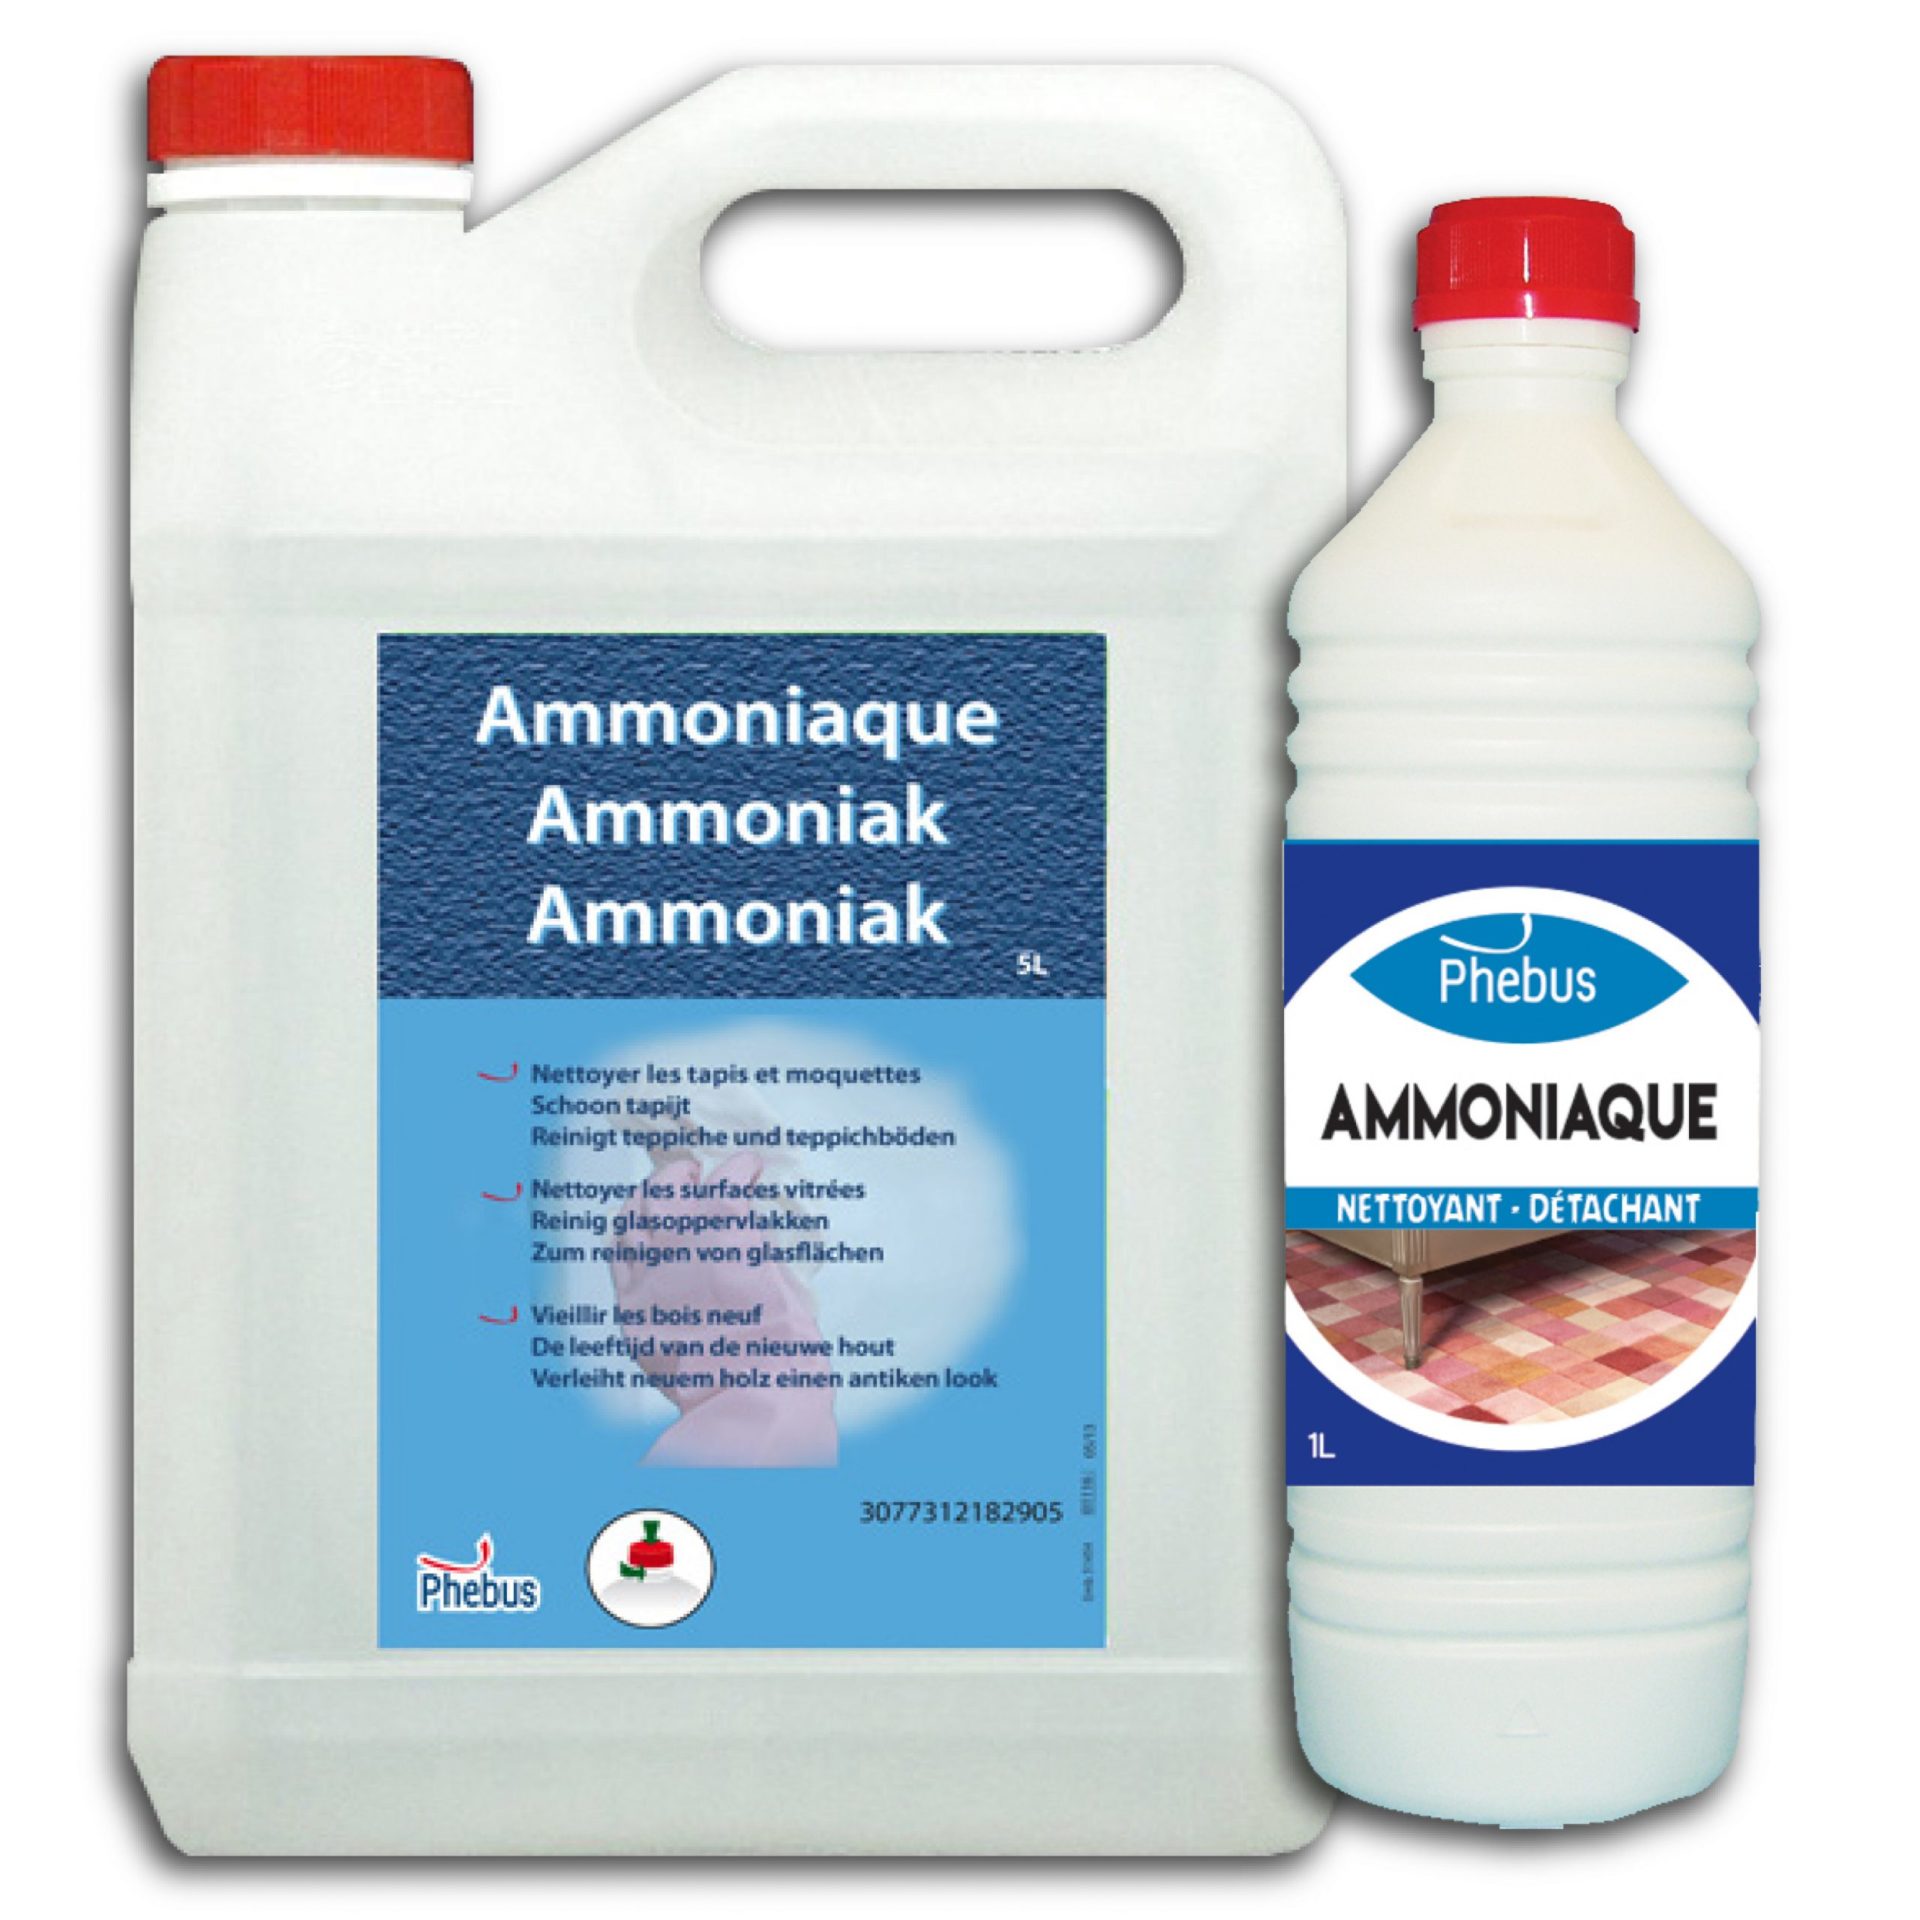 Ammoniaque